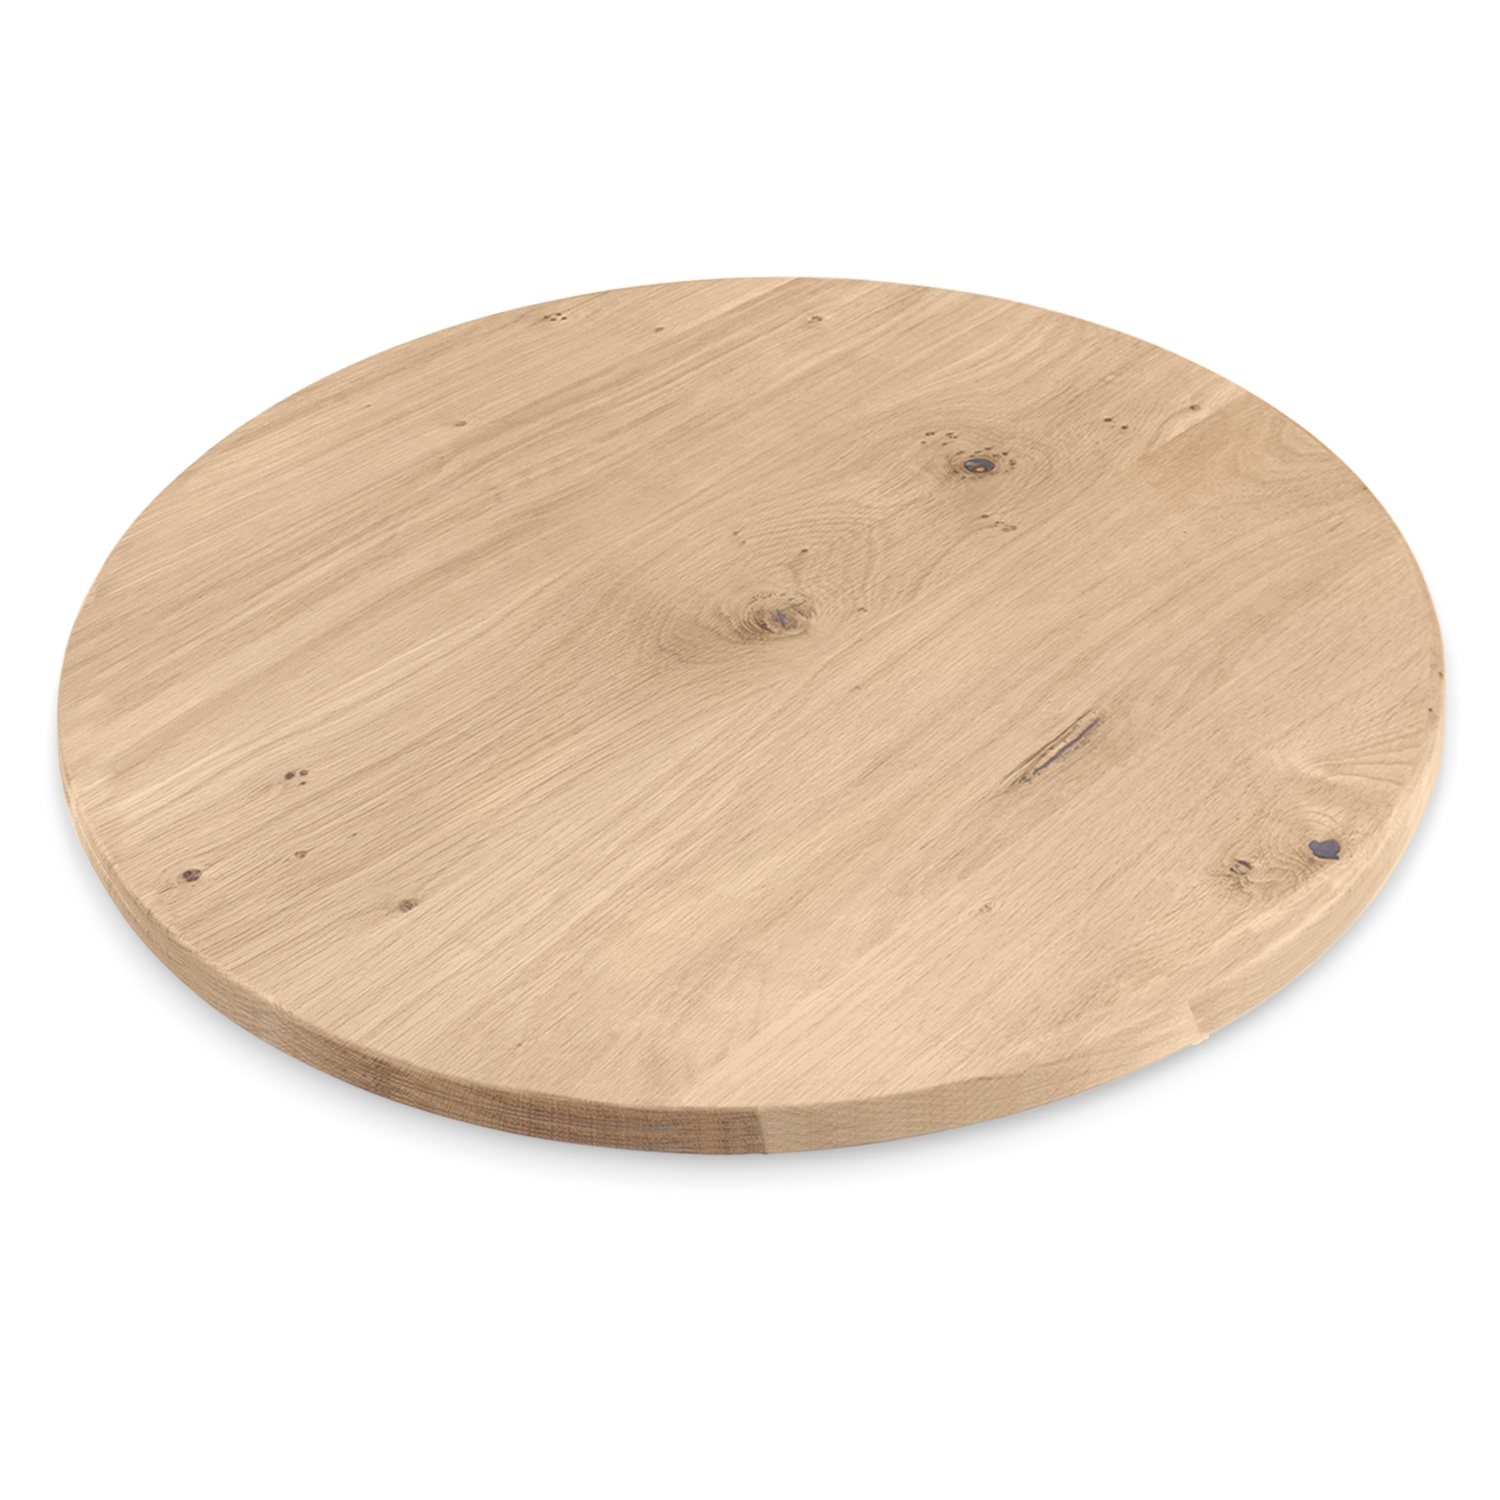  Tischplatte Wildeiche rund - 4 cm dick (1-Schicht) - XXL Lamellen (14-20 cm breit) - Asteiche (rustikal) - verleimt & künstlich getrocknet (HF 8-12%) - verschiedene Größen